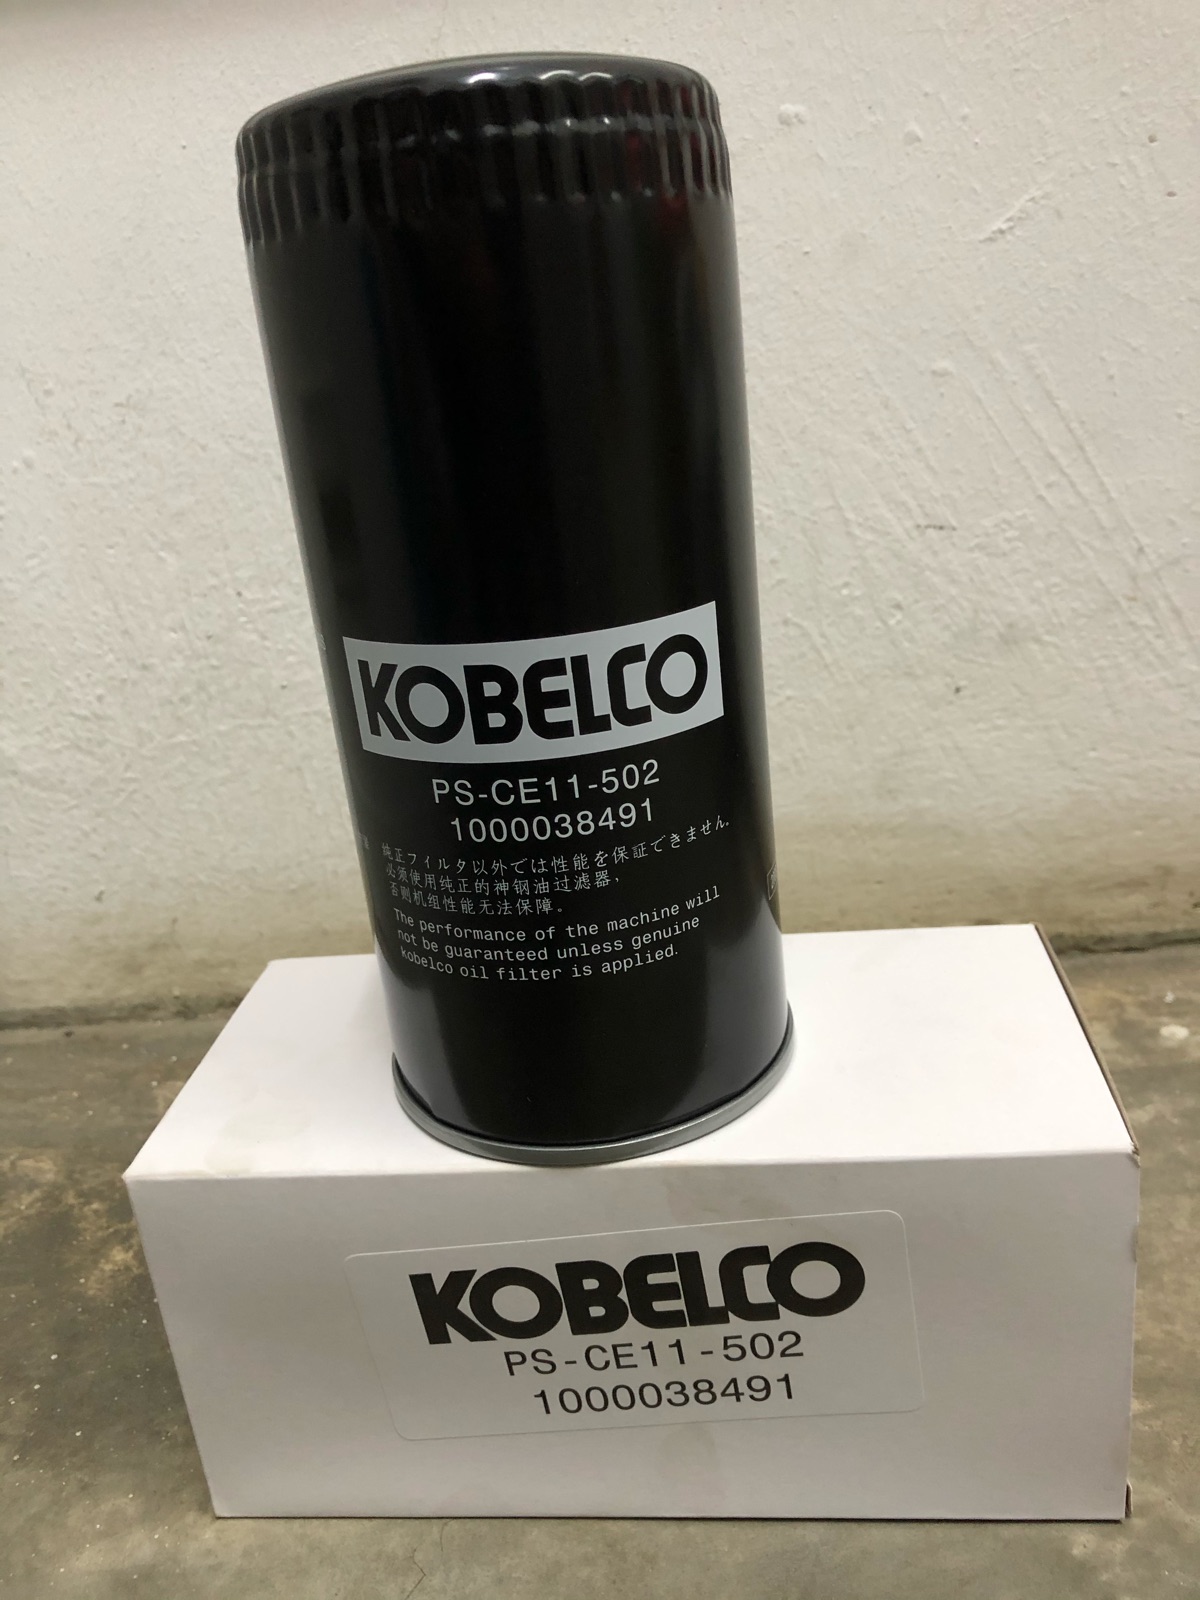 Kobelco Oil Filter PS-CE11-502 